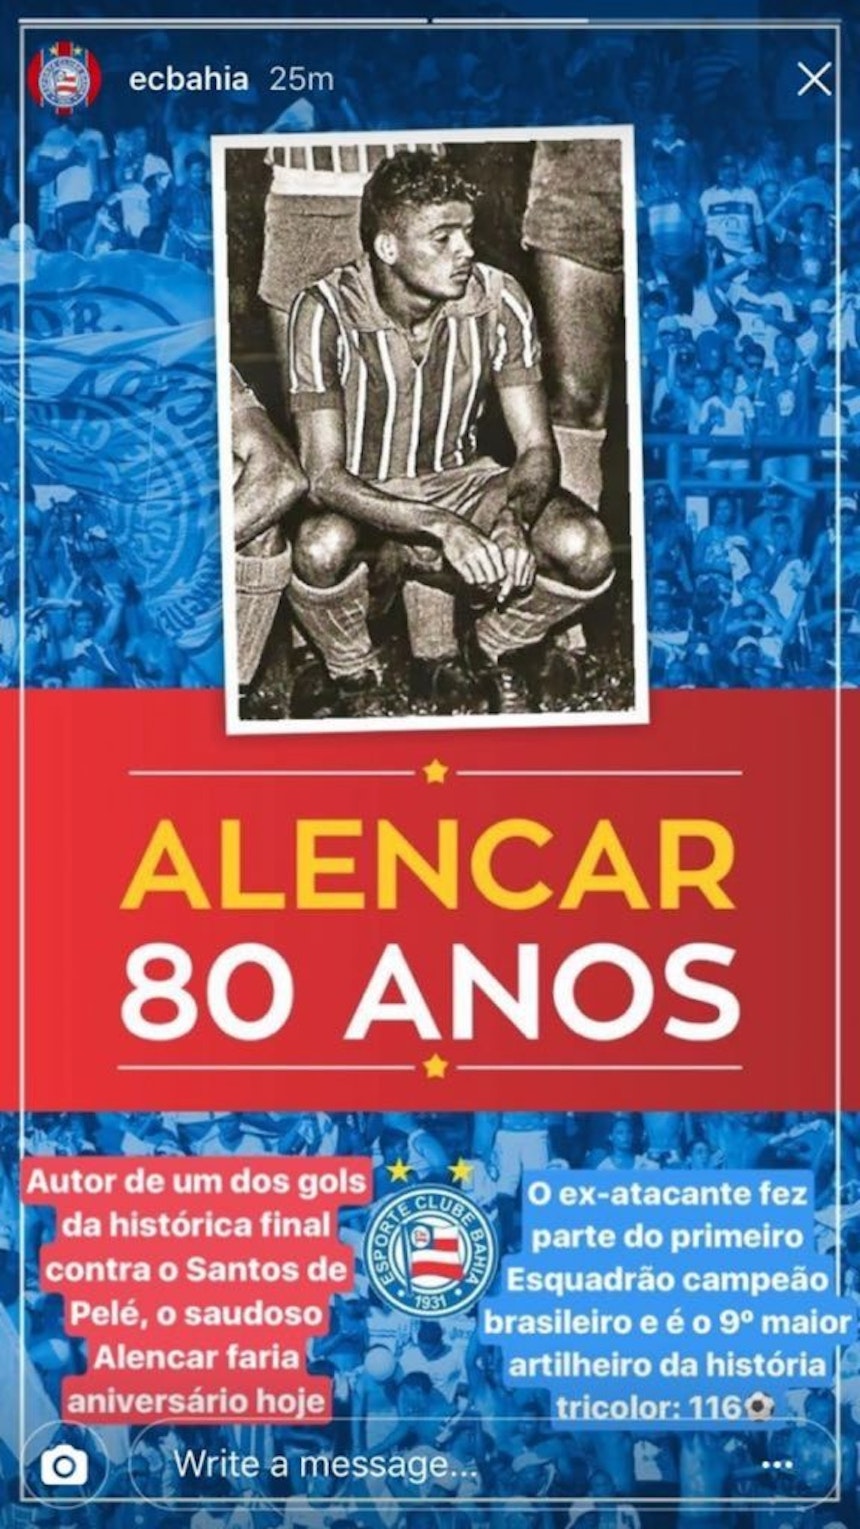 Alencar recebeu homenagem no Bahia (Foto: Reprodução/Instagram)